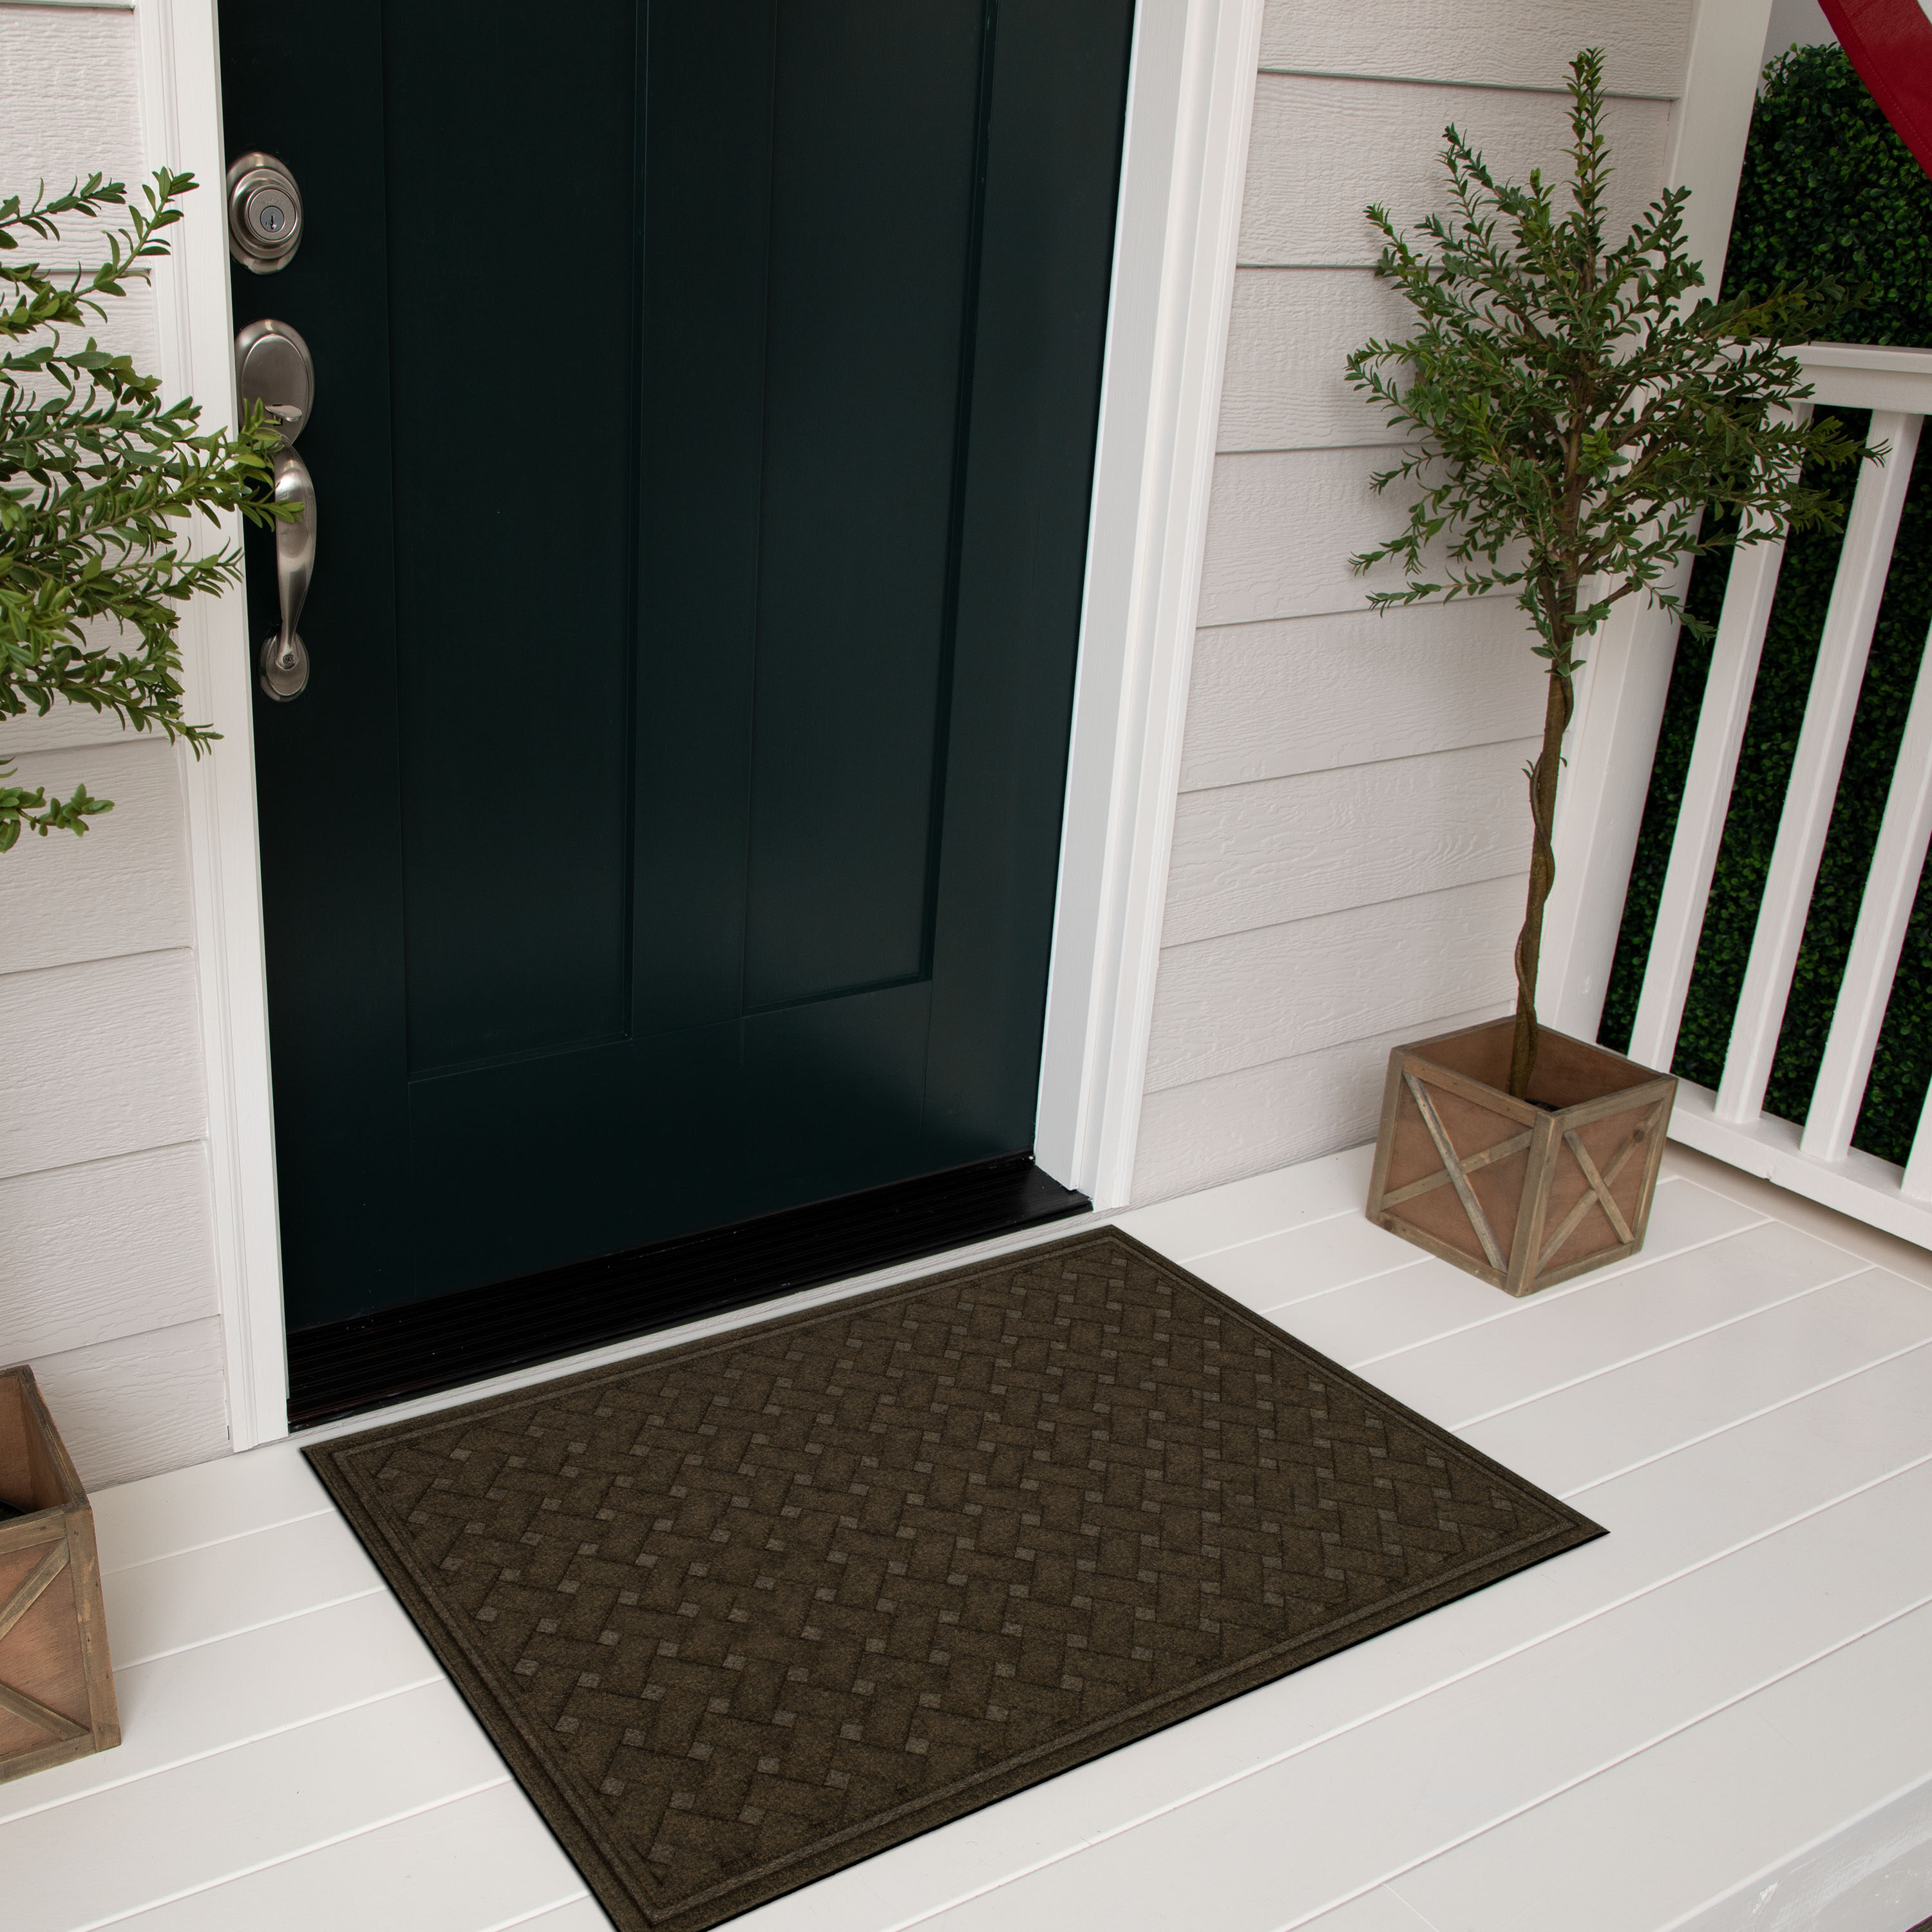 Design Imports Shut The Front Door Doormat - 20261942